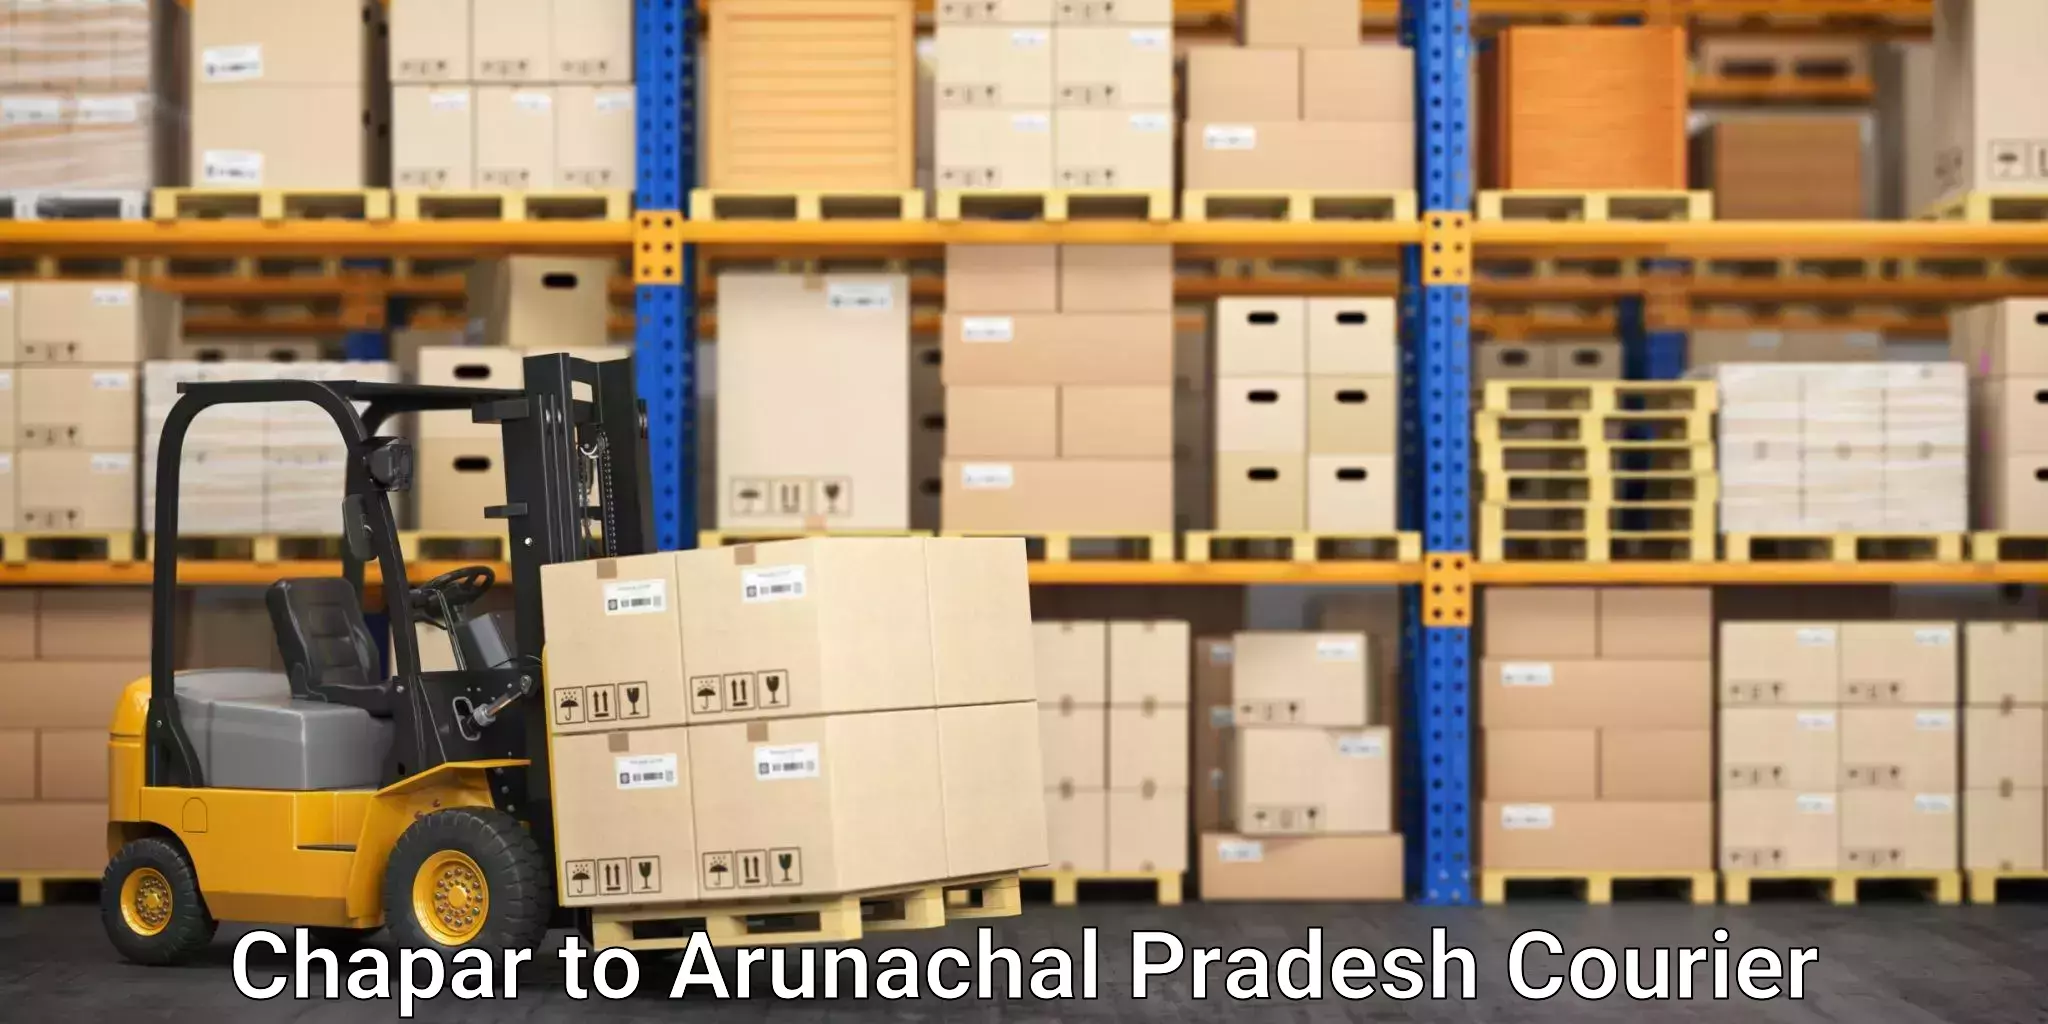 Versatile courier options Chapar to Arunachal Pradesh